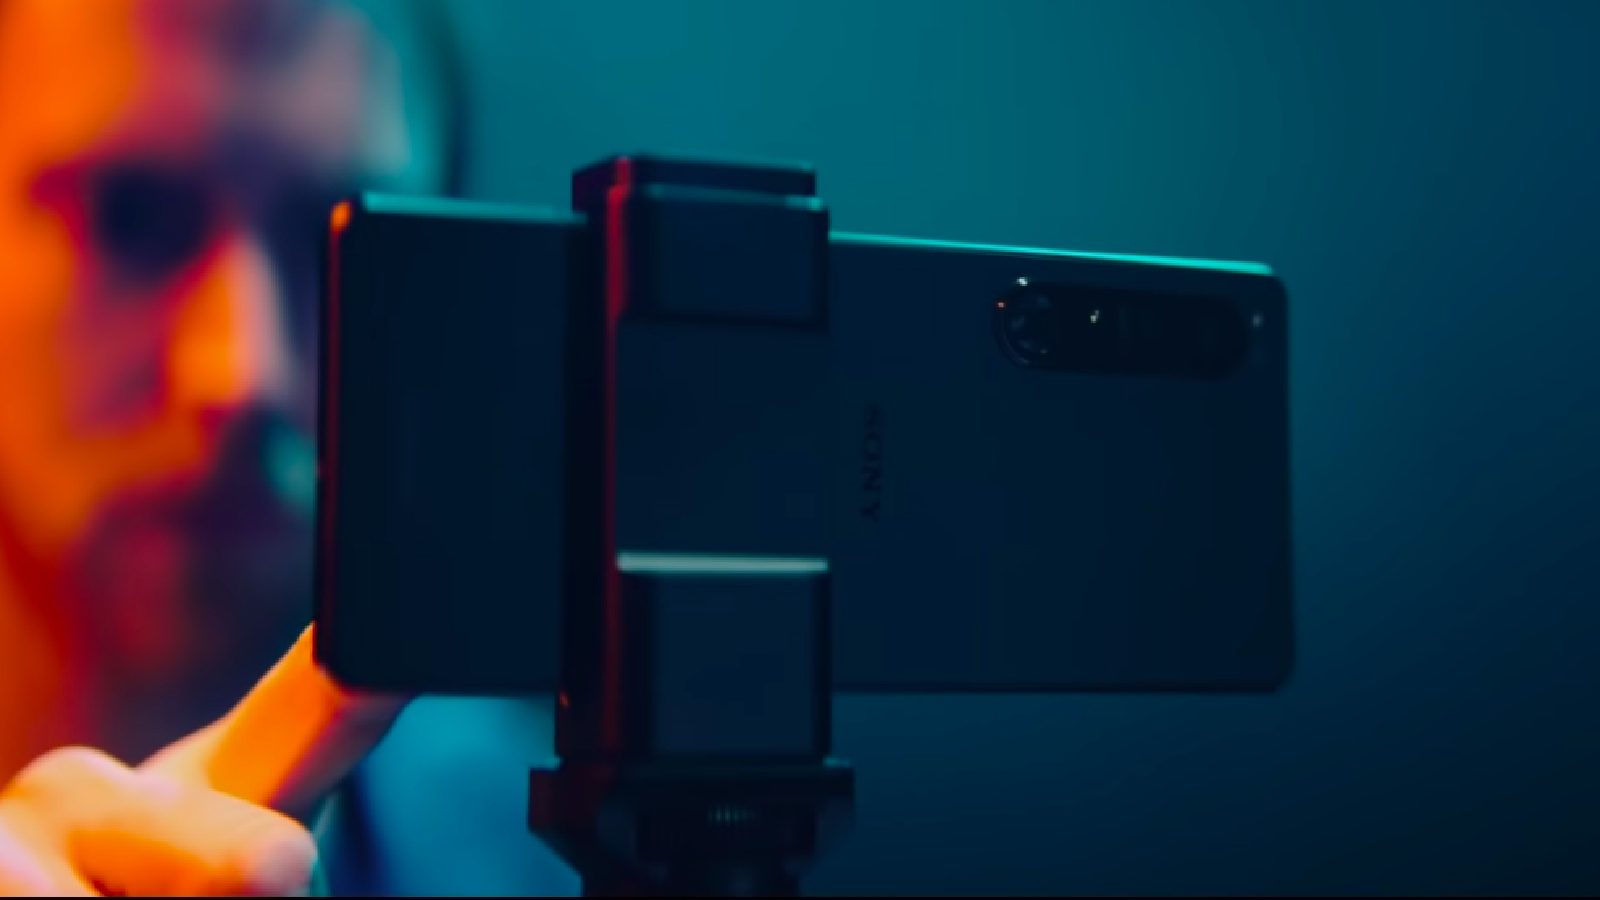 Sony Xperia 1 IV в сочетании с визуальной гарнитурой Xperia View просто потрясающий: бренд